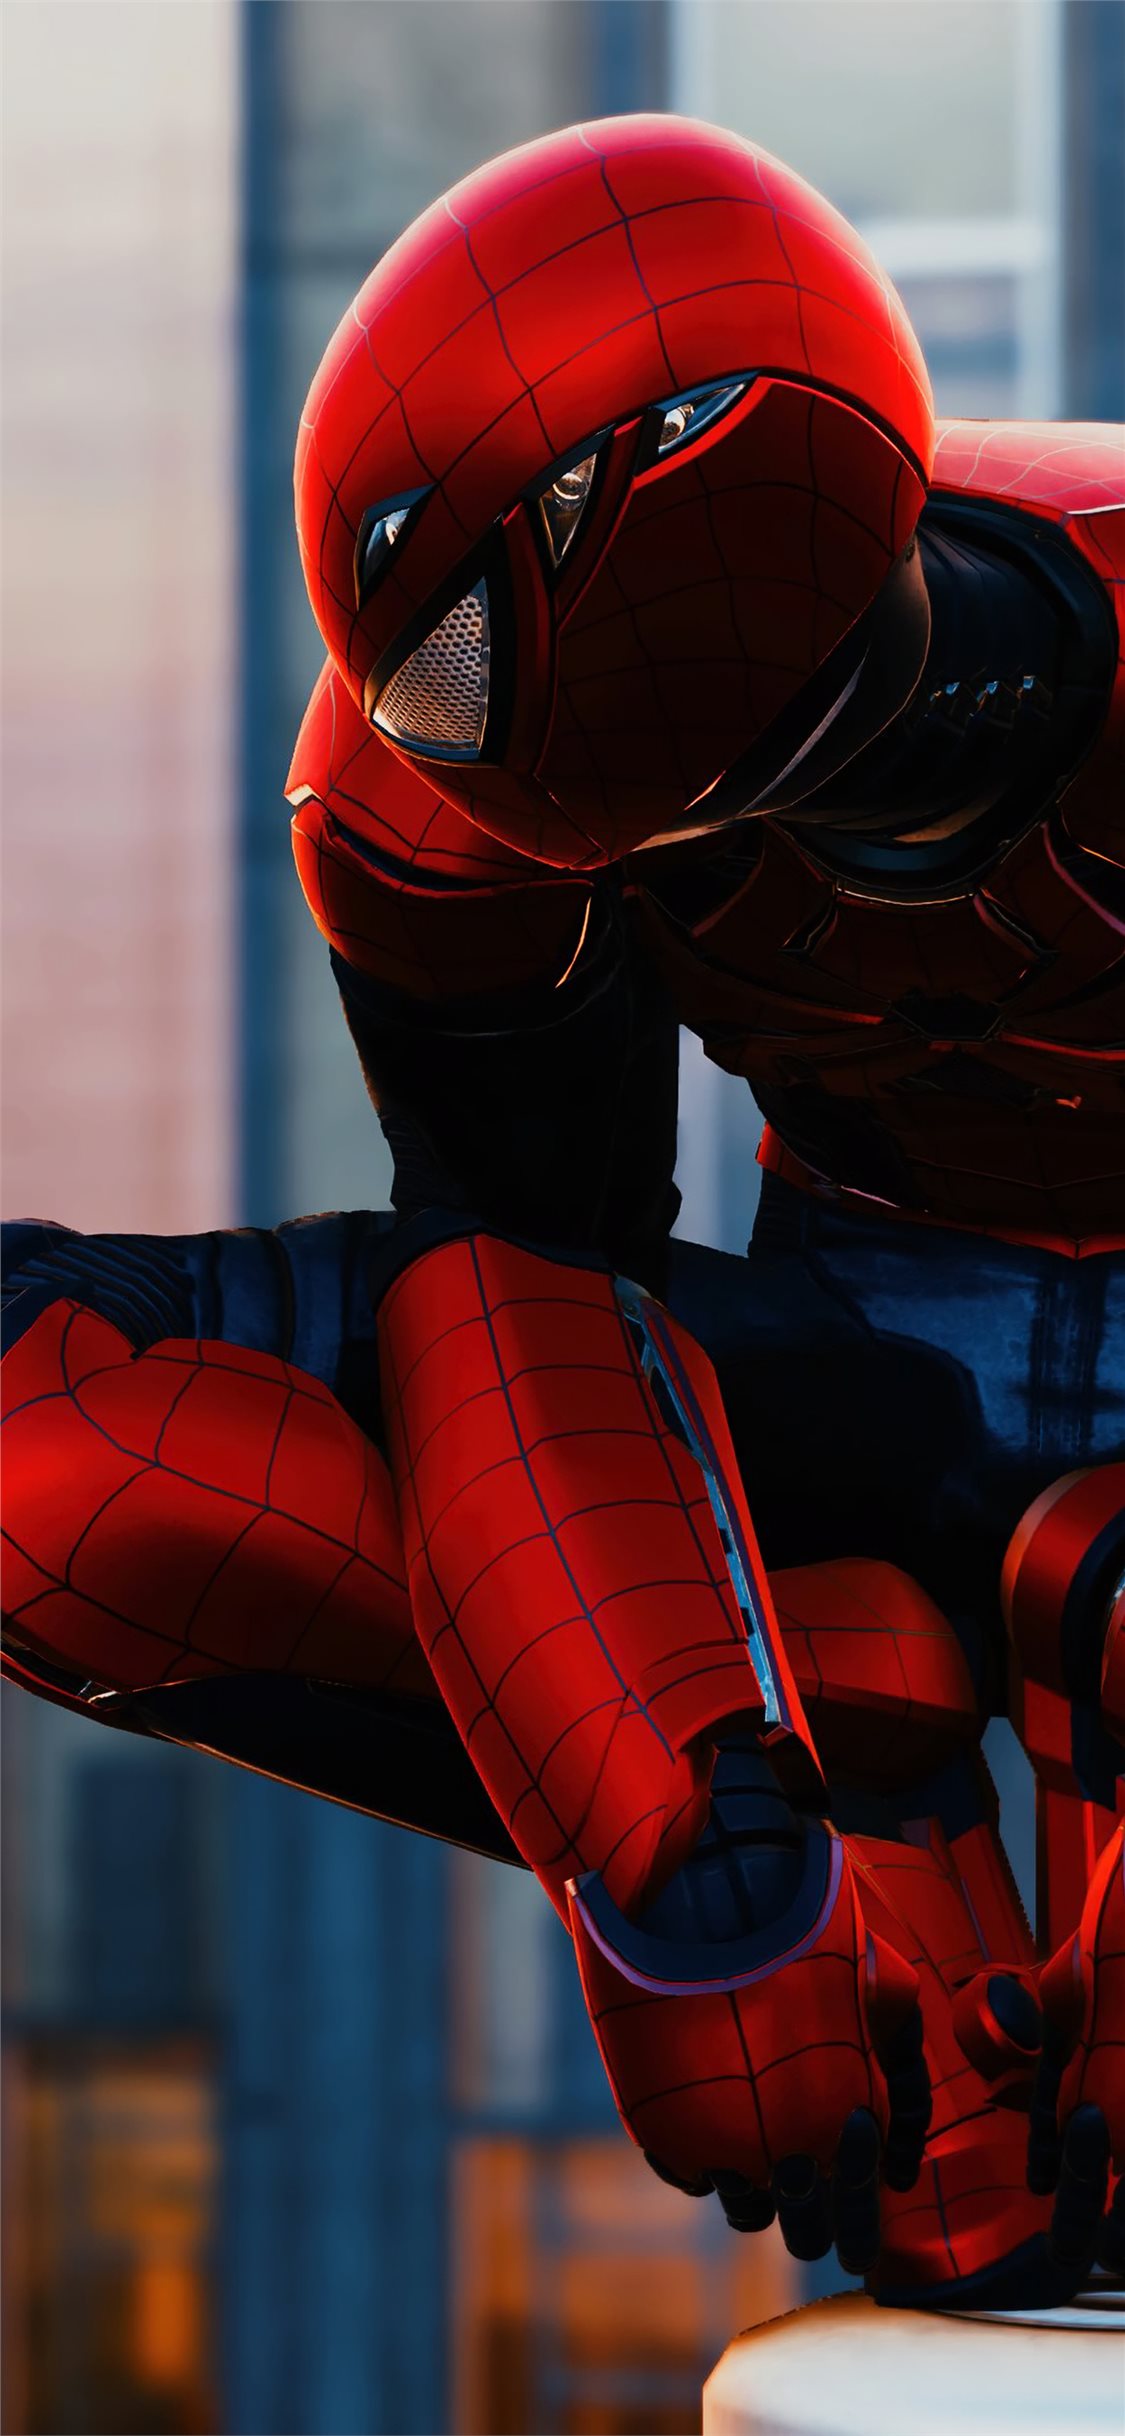 ps4 wallpaper,rot,spider man,erfundener charakter,superheld,persönliche schutzausrüstung